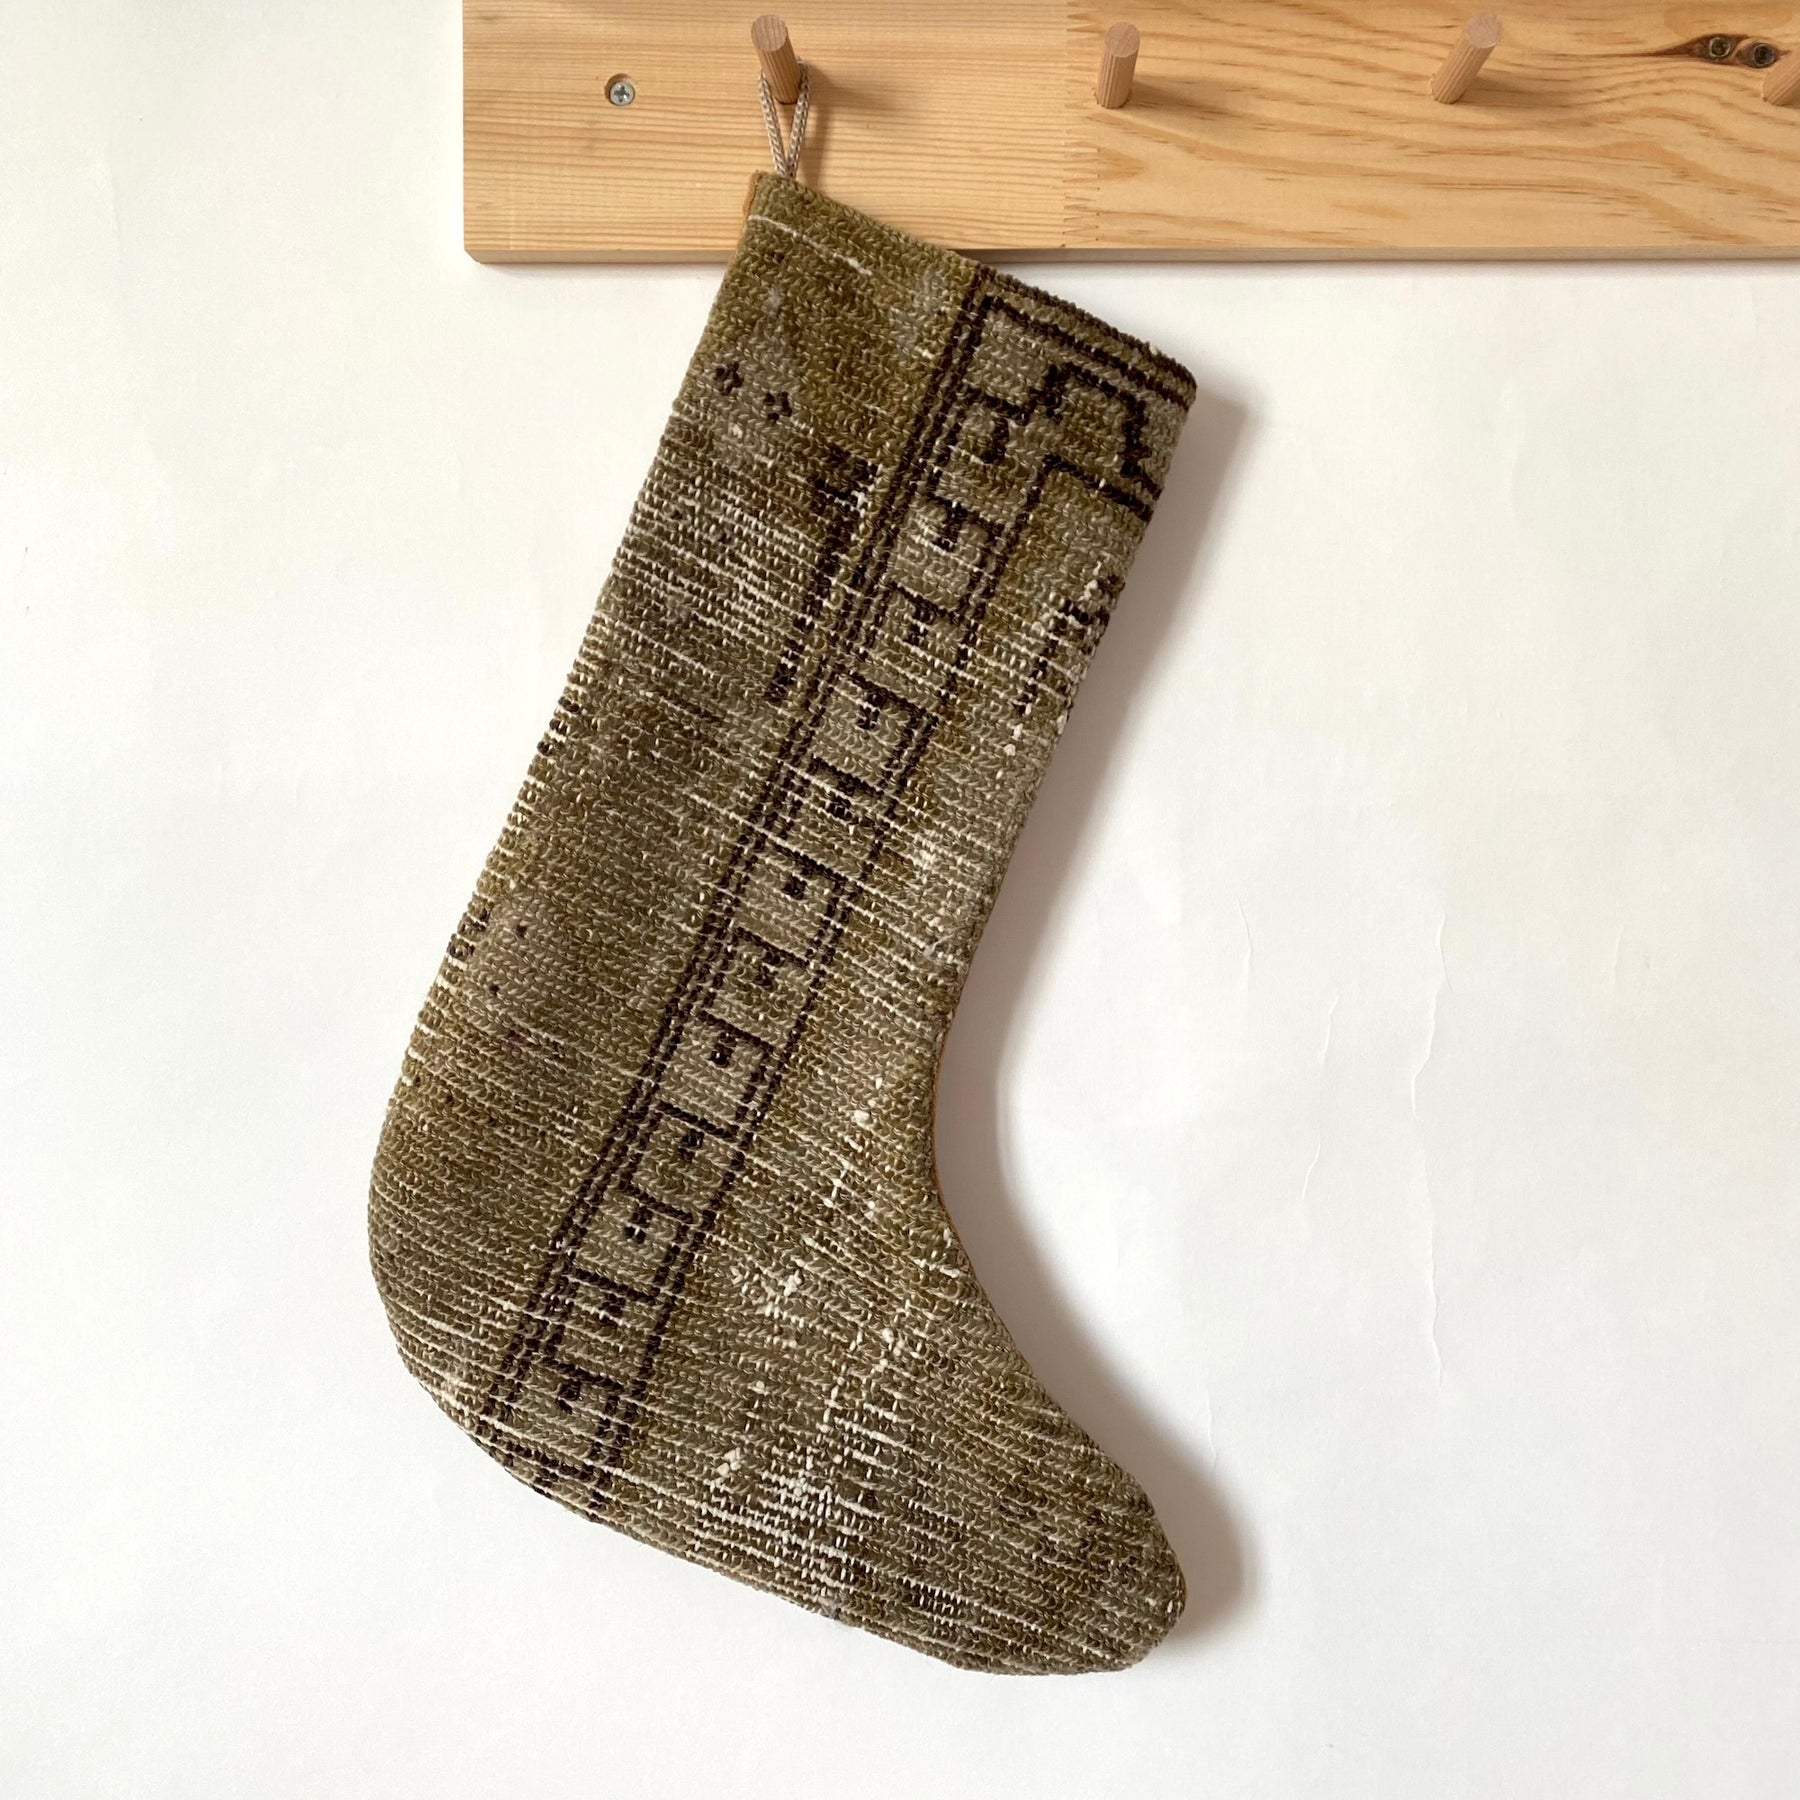 Jenafar - Vintage Stocking - kudenrugs